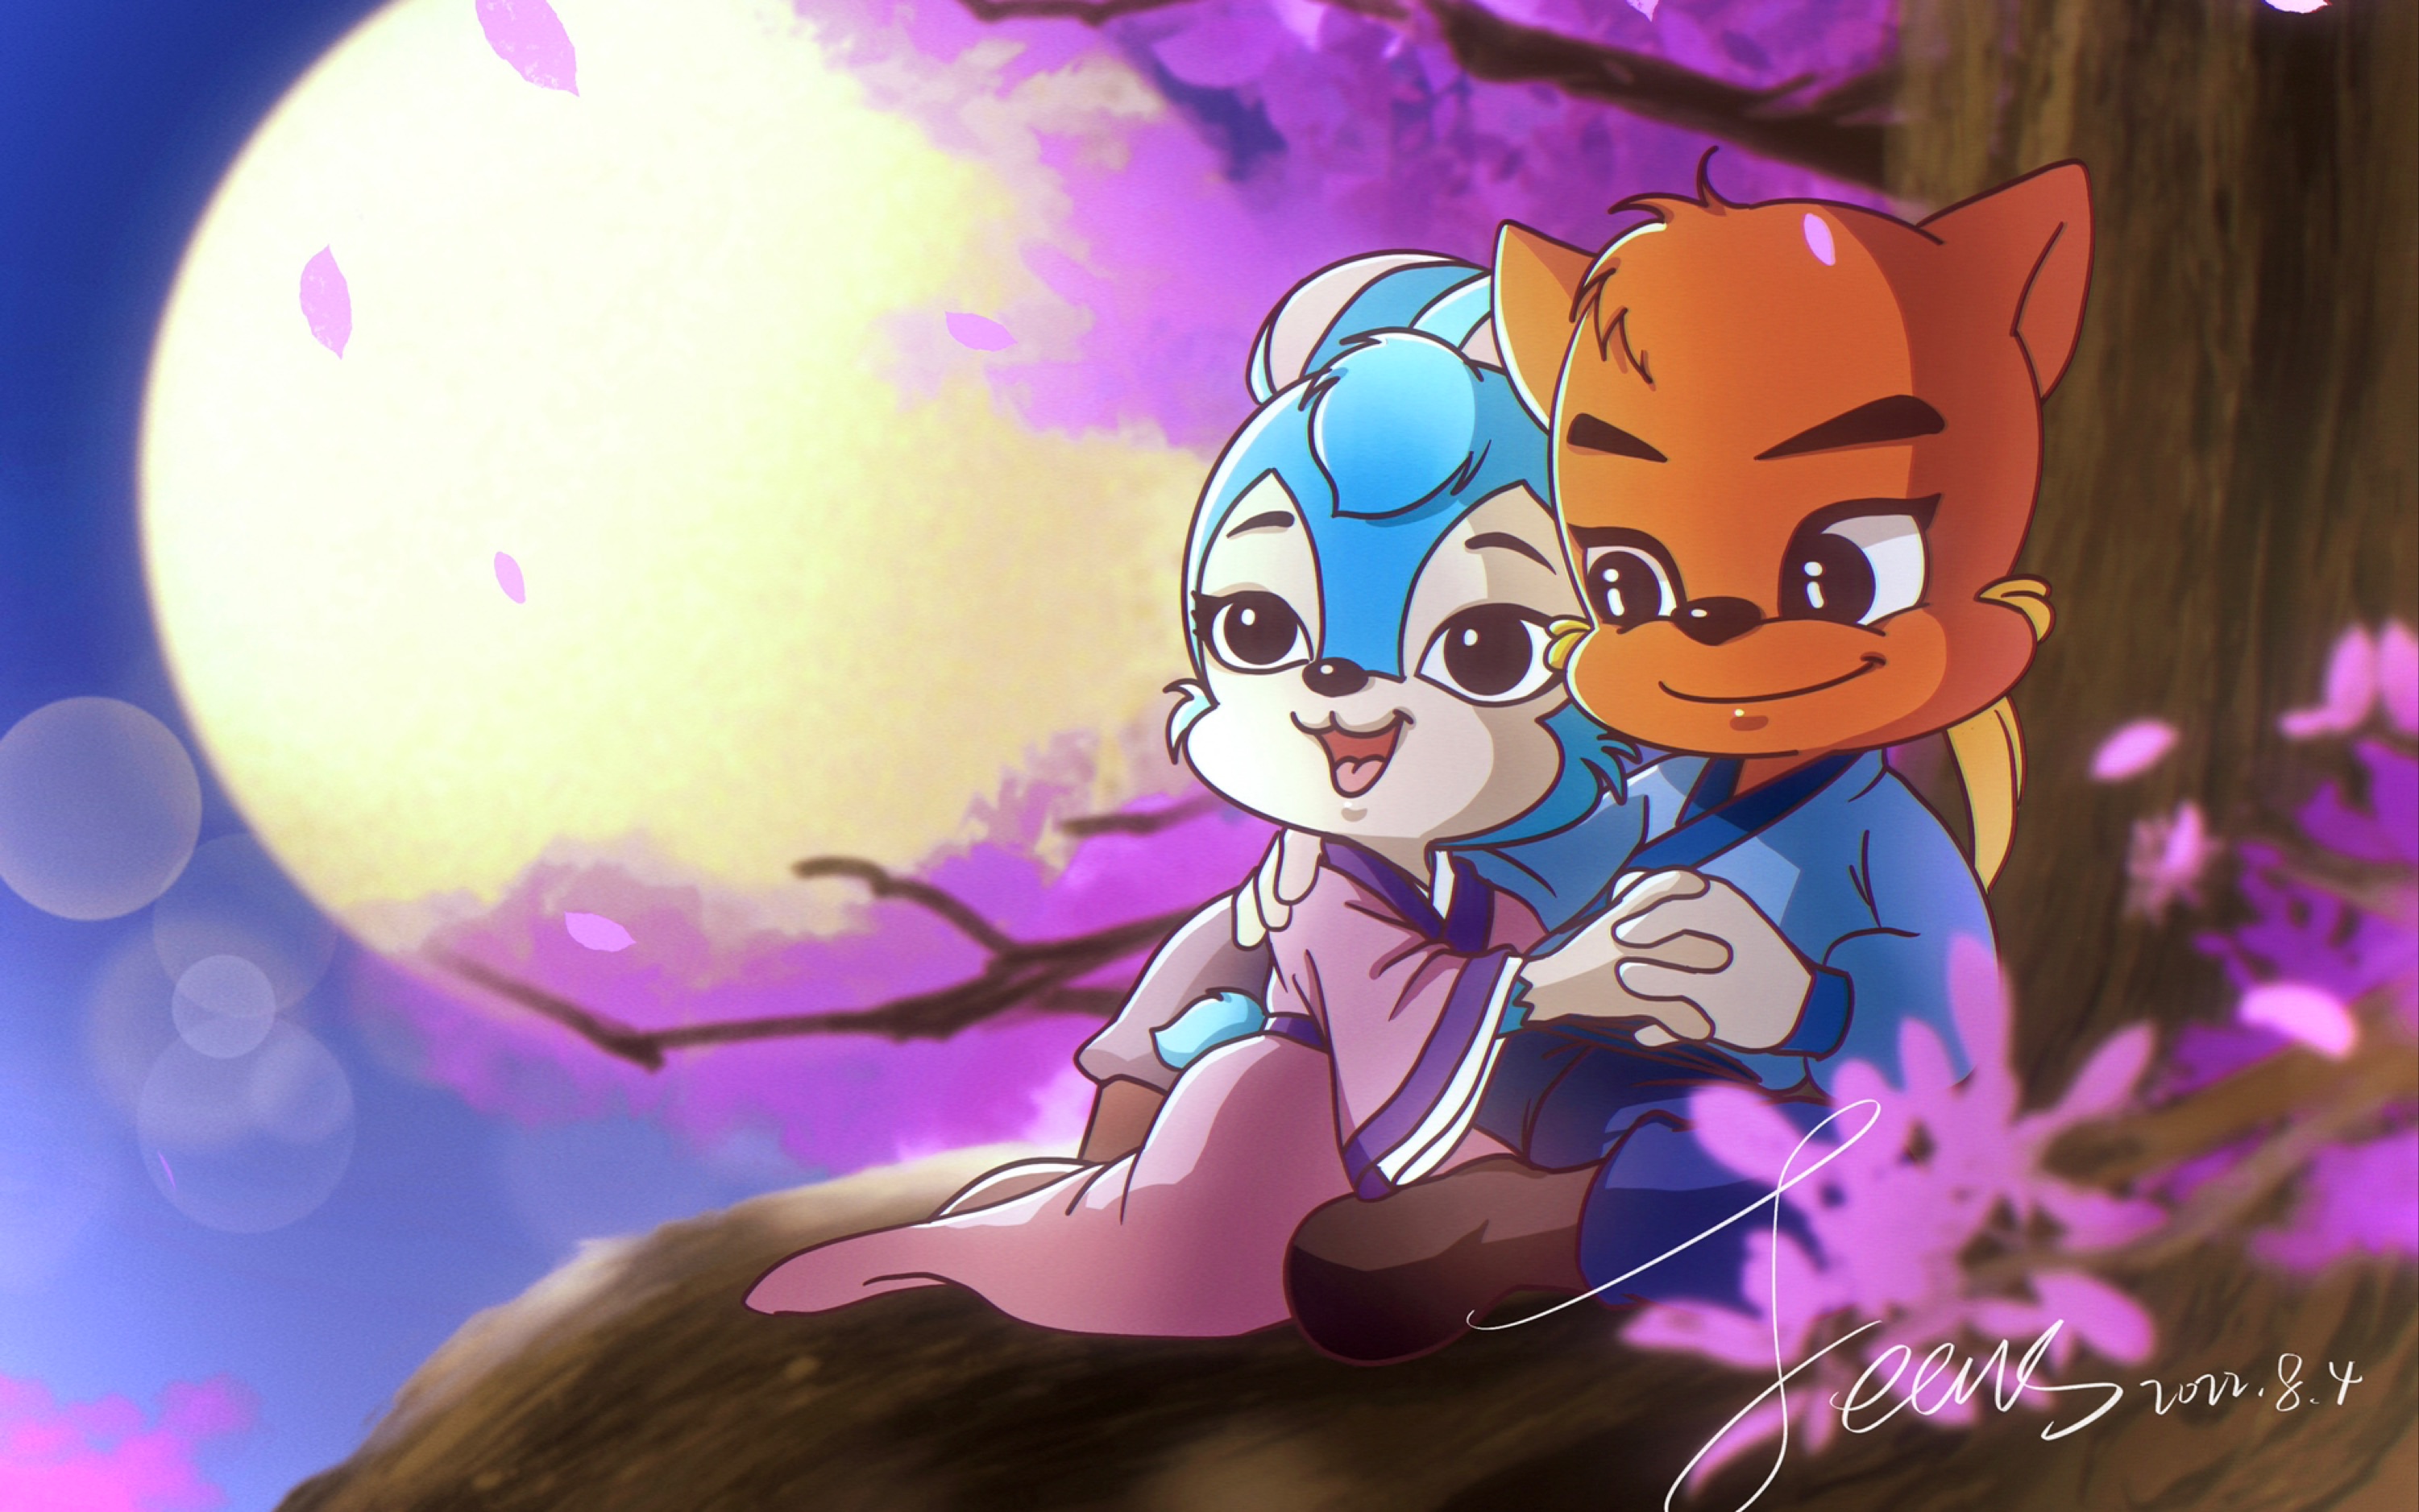 虹猫蓝兔人物角色图片